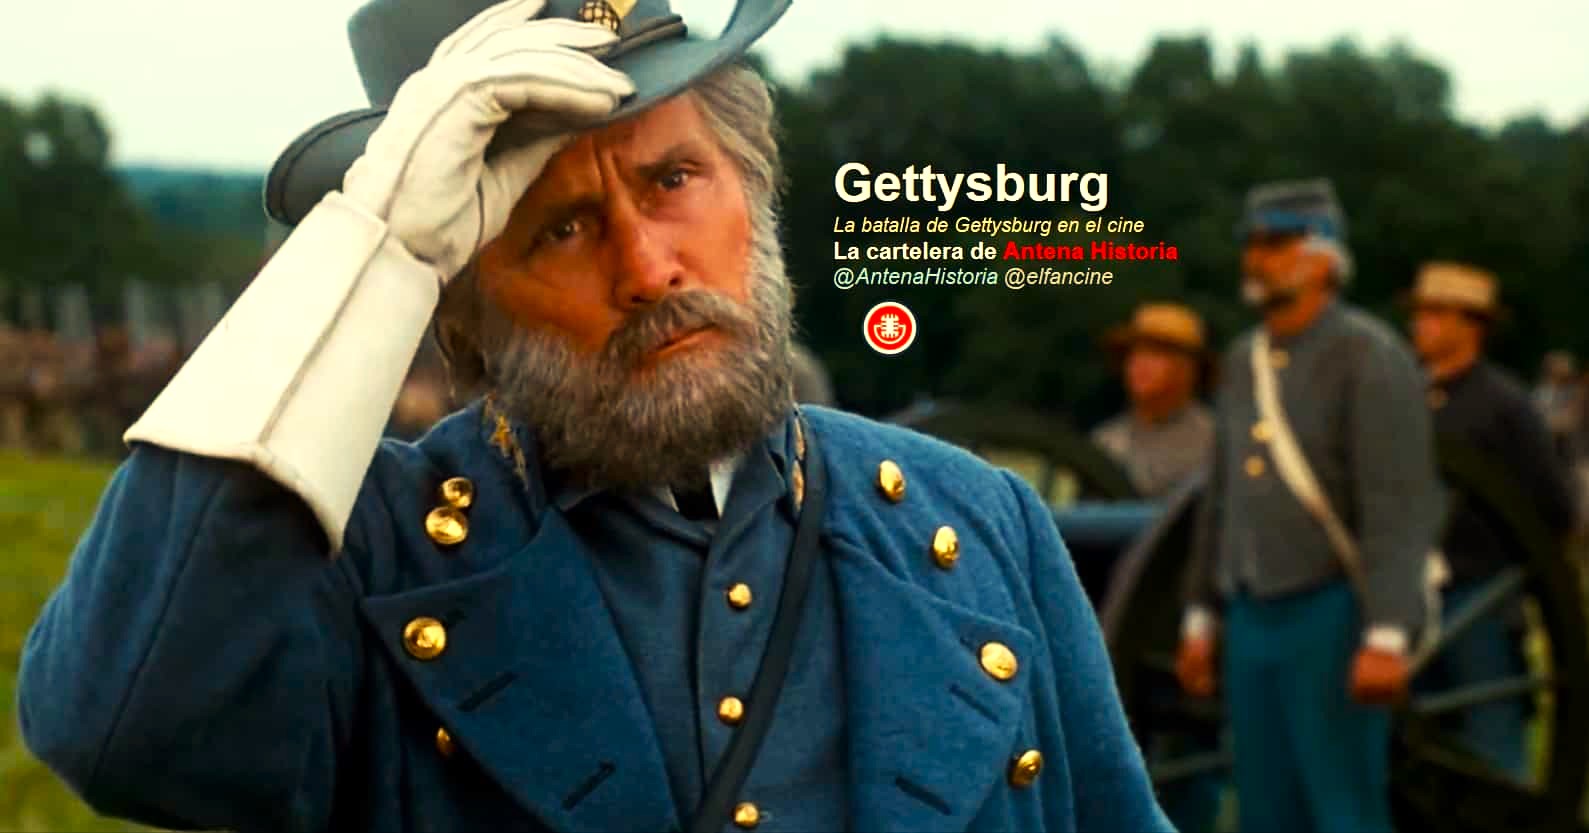 La batalla de Gettysburg - Gettysburg - Guerra de Secesion - Gneral Lee - Unionistas y confederados - Podcast de cine - Antena Historia - el fancine - AlvaroGP - Alvaro Garcia